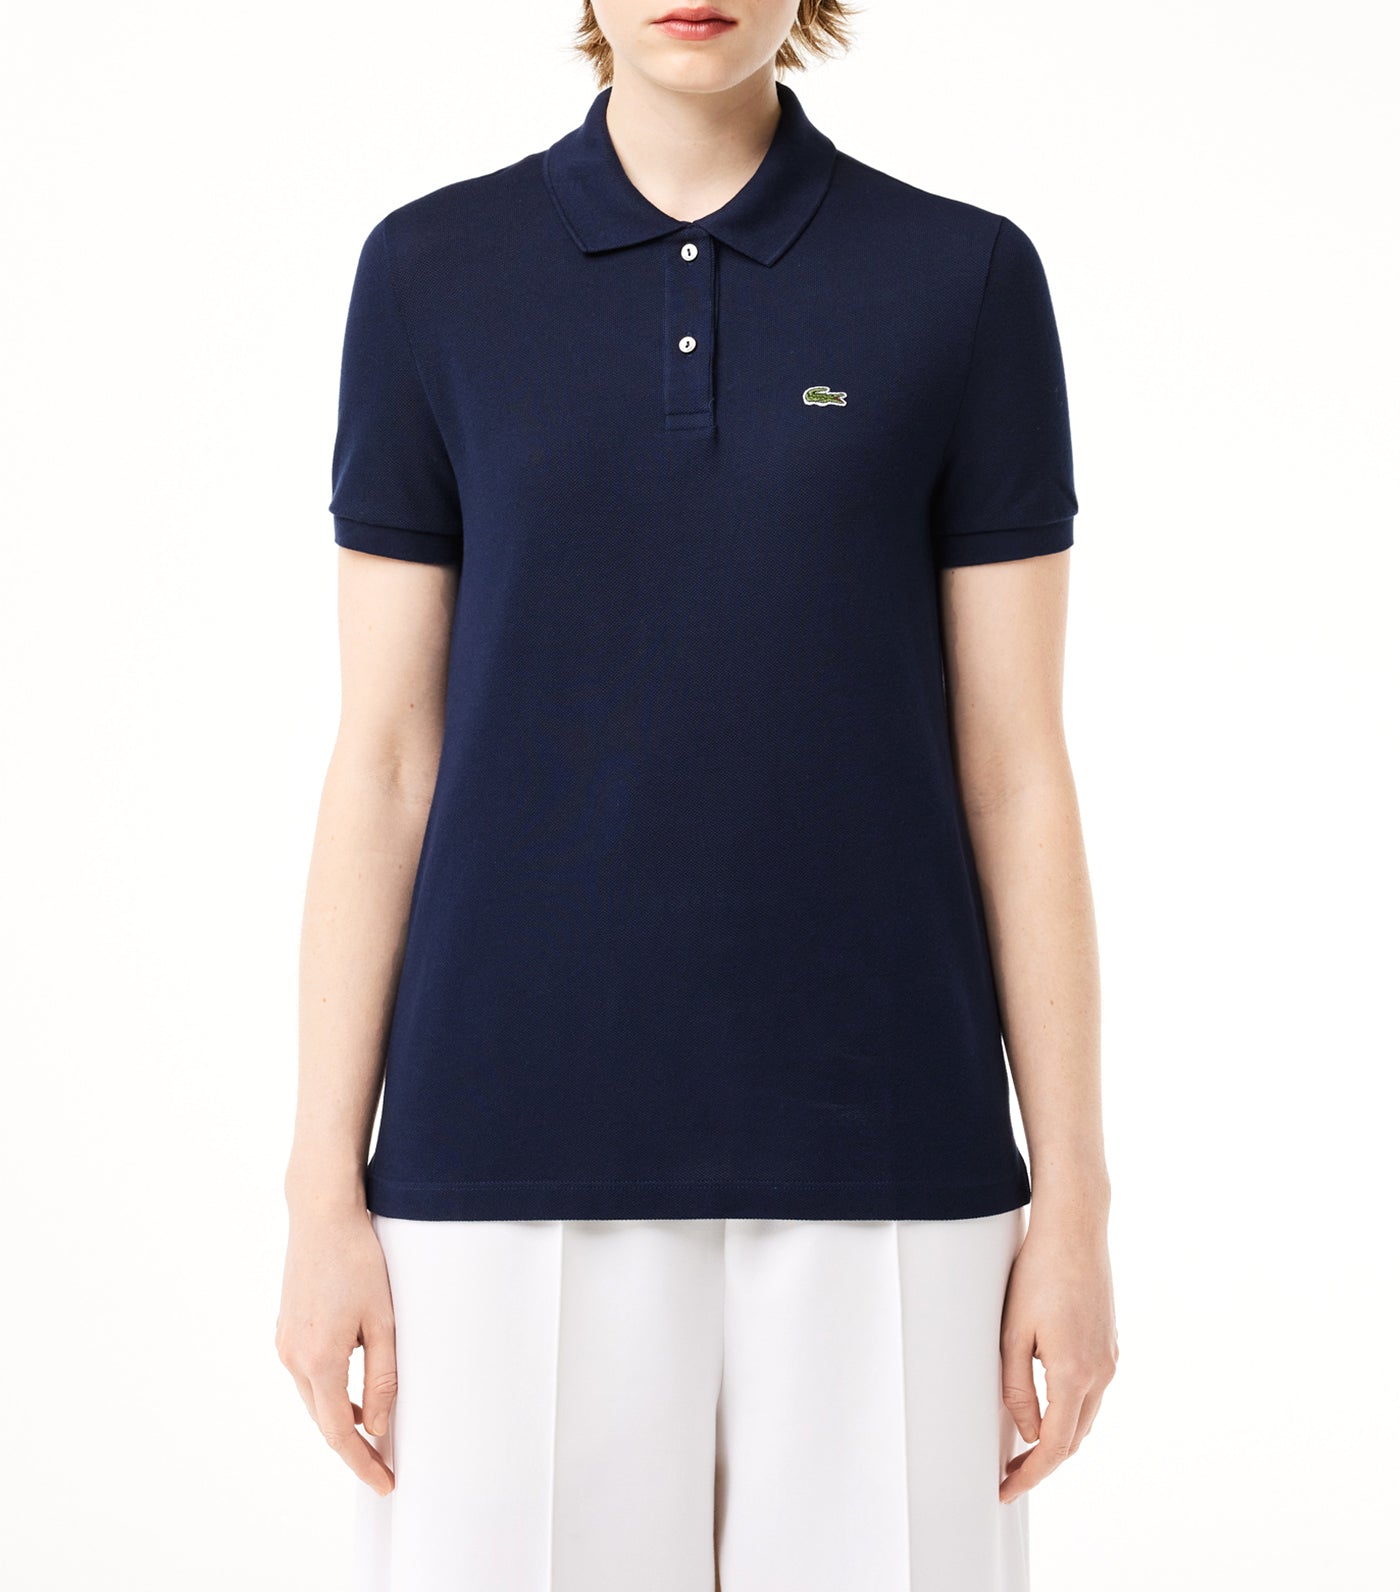 Women's Lacoste Classic Fit Soft Cotton Petit Piqué Polo Shirt Navy Blue